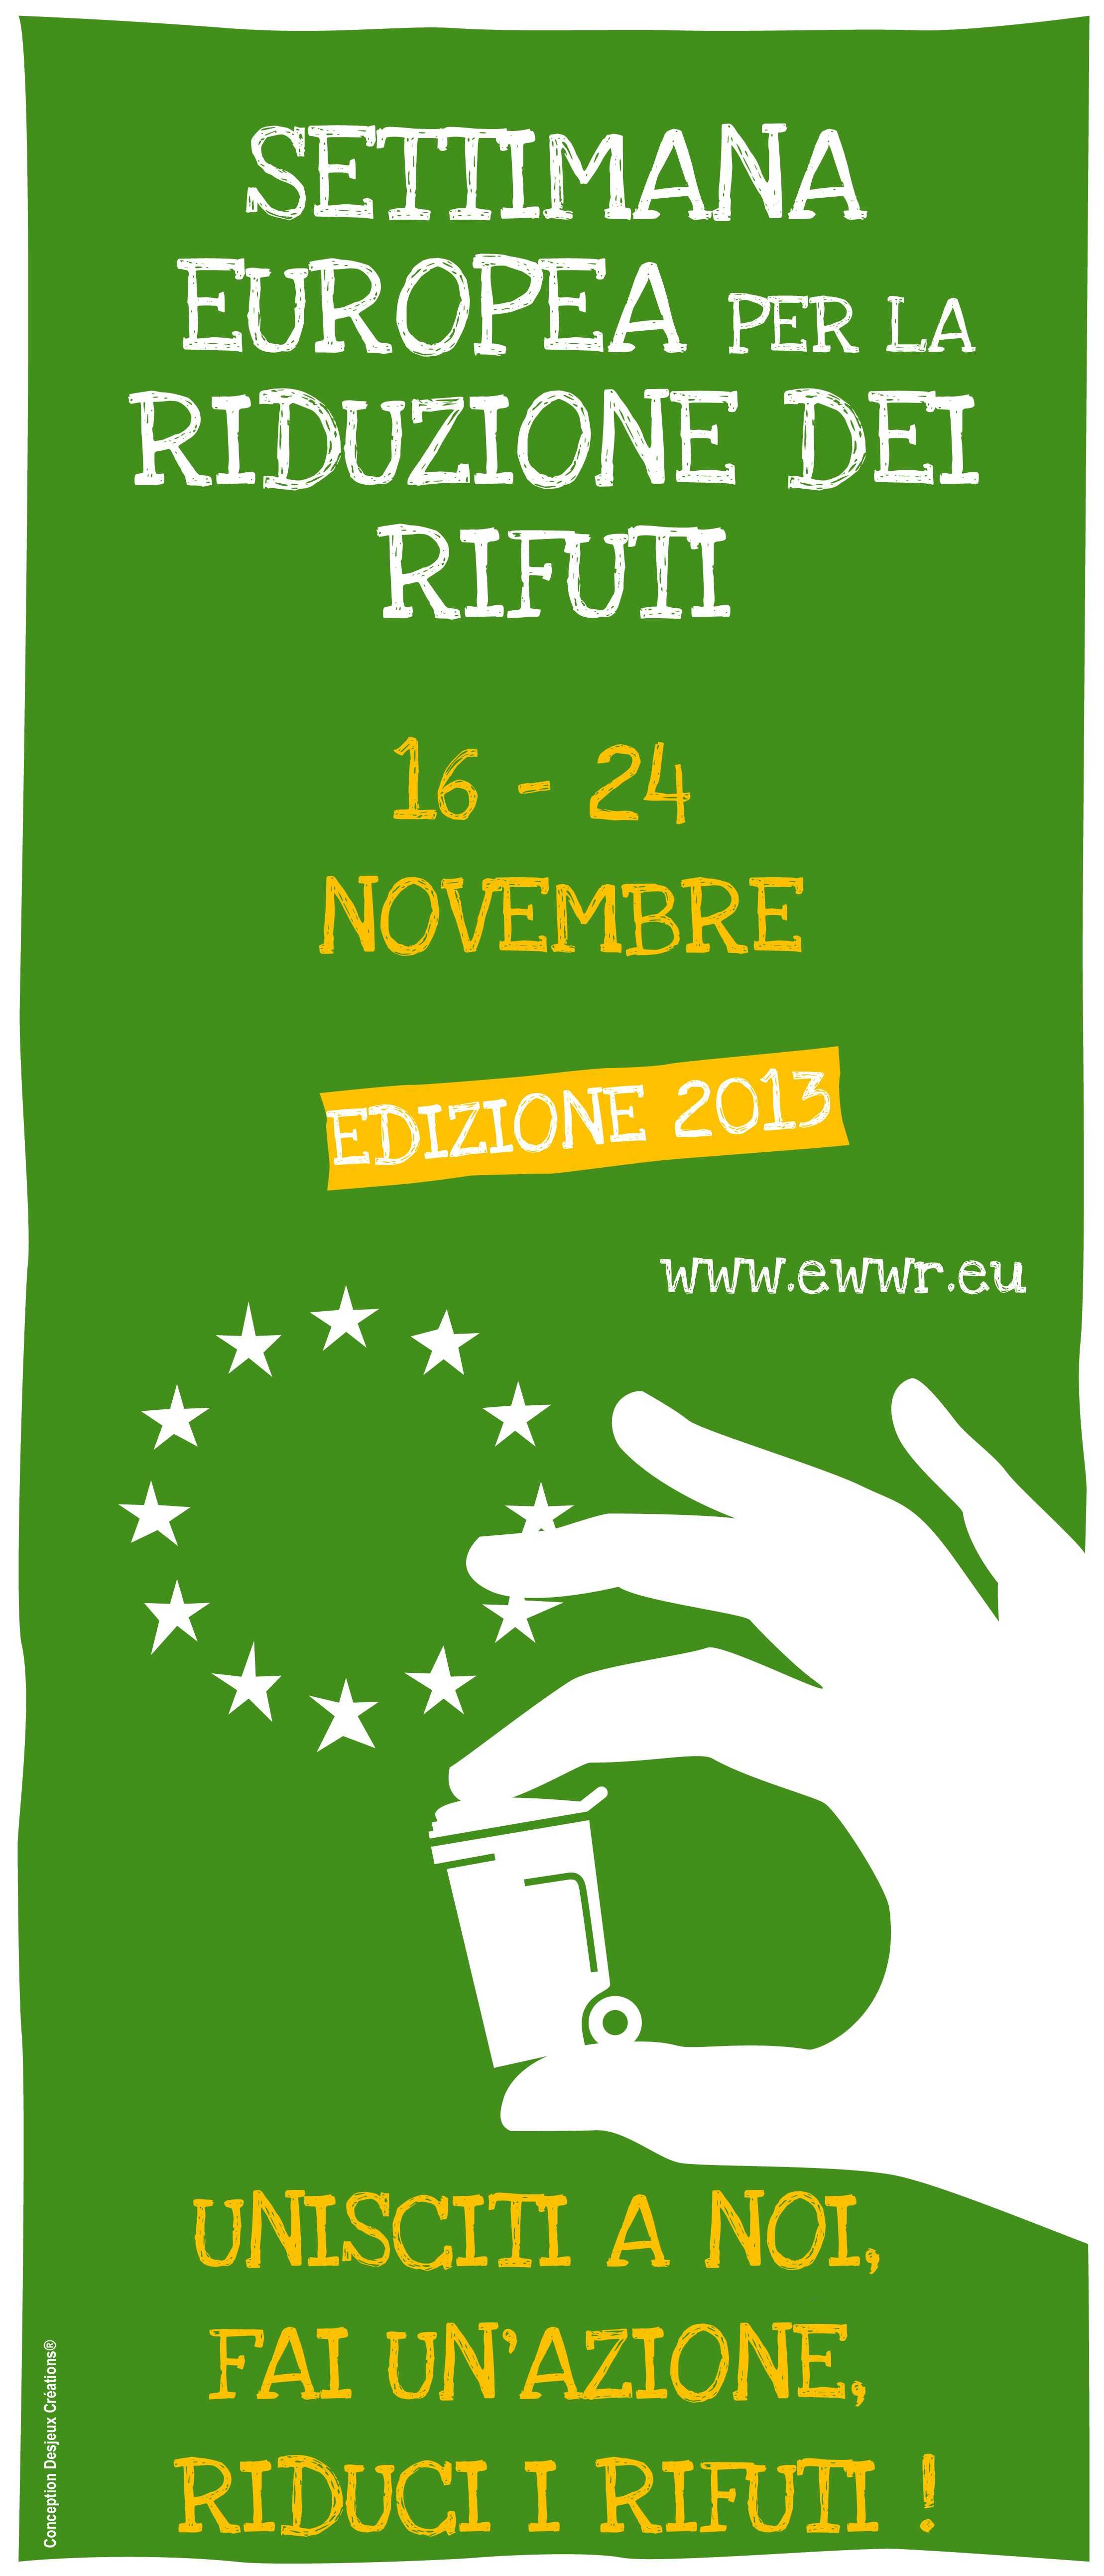 Settimana europea per la riduzione dei rifiuti: eventi e dibattiti a S.Antonio Abate